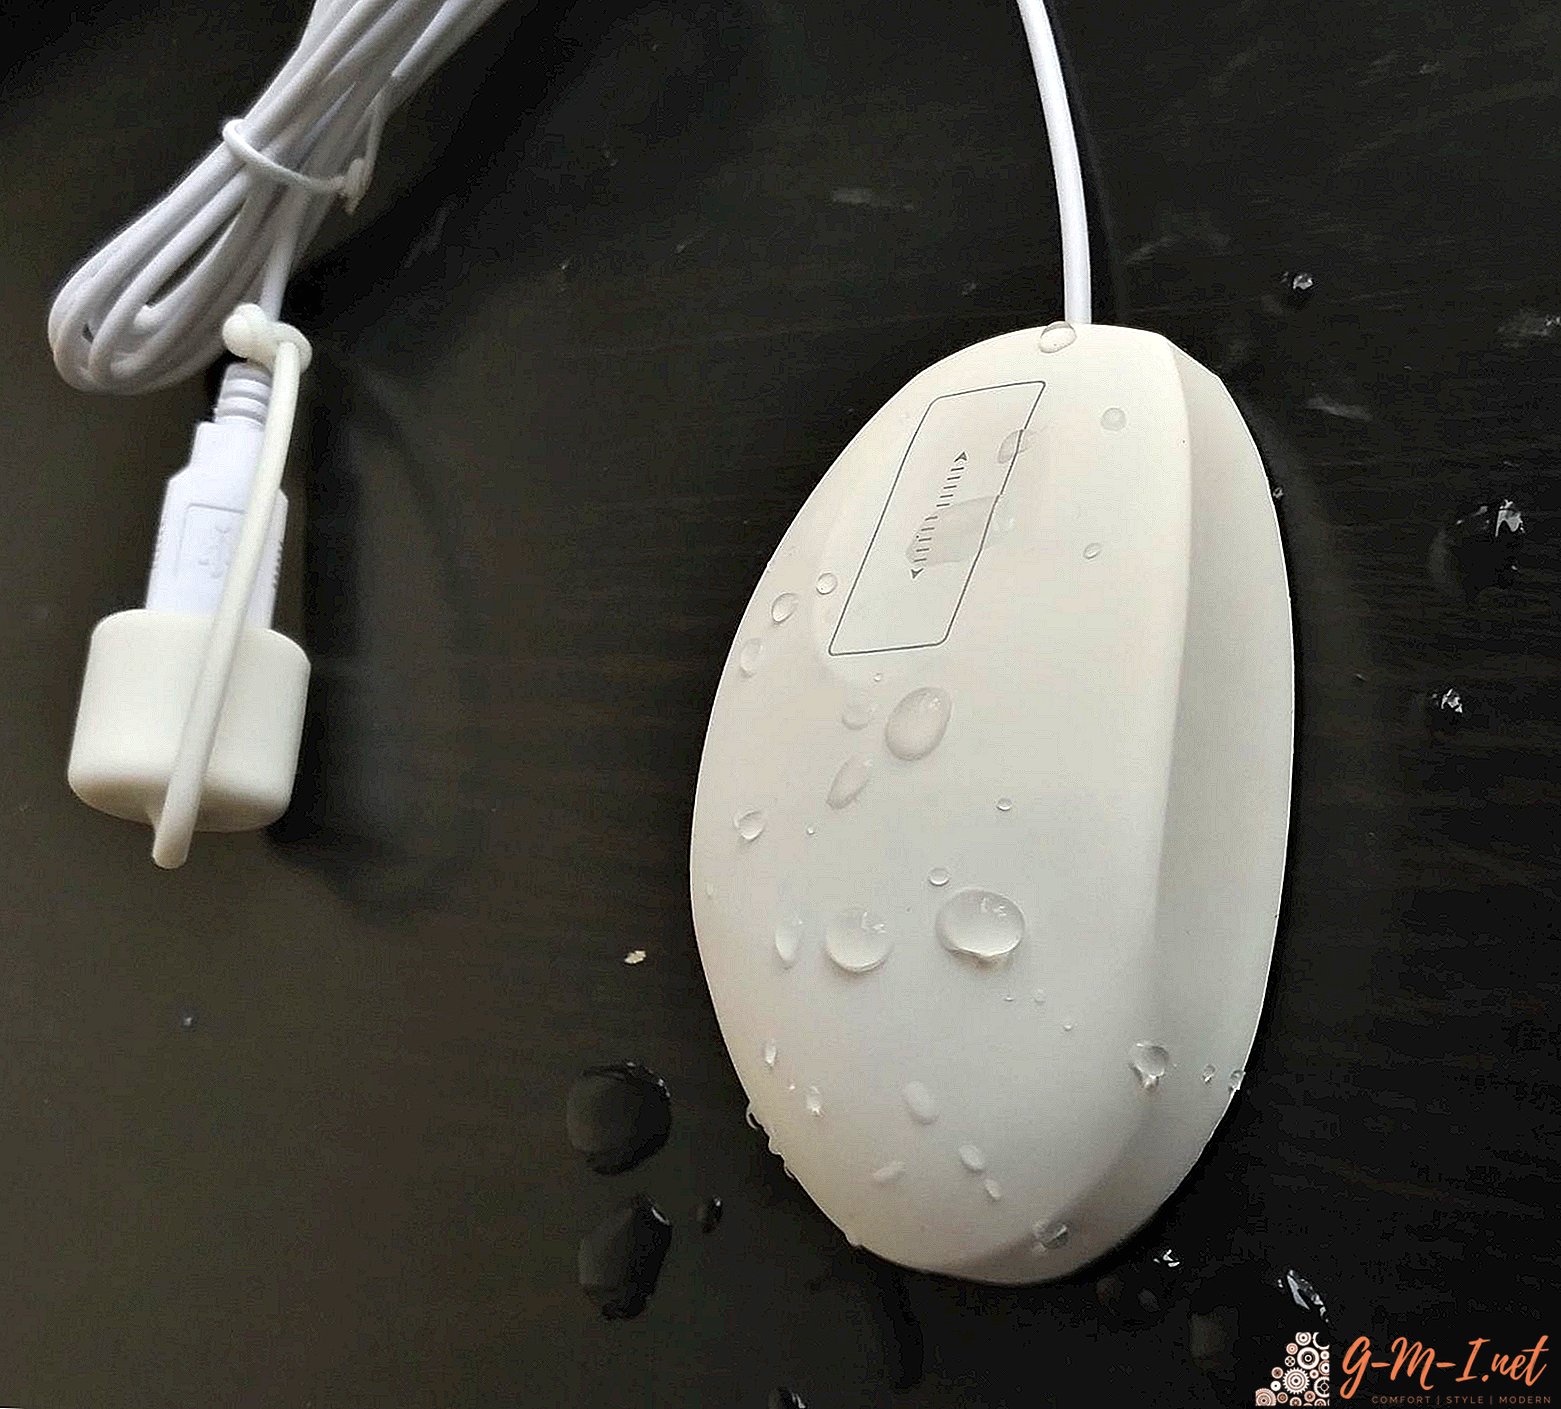 Cómo limpiar un mouse